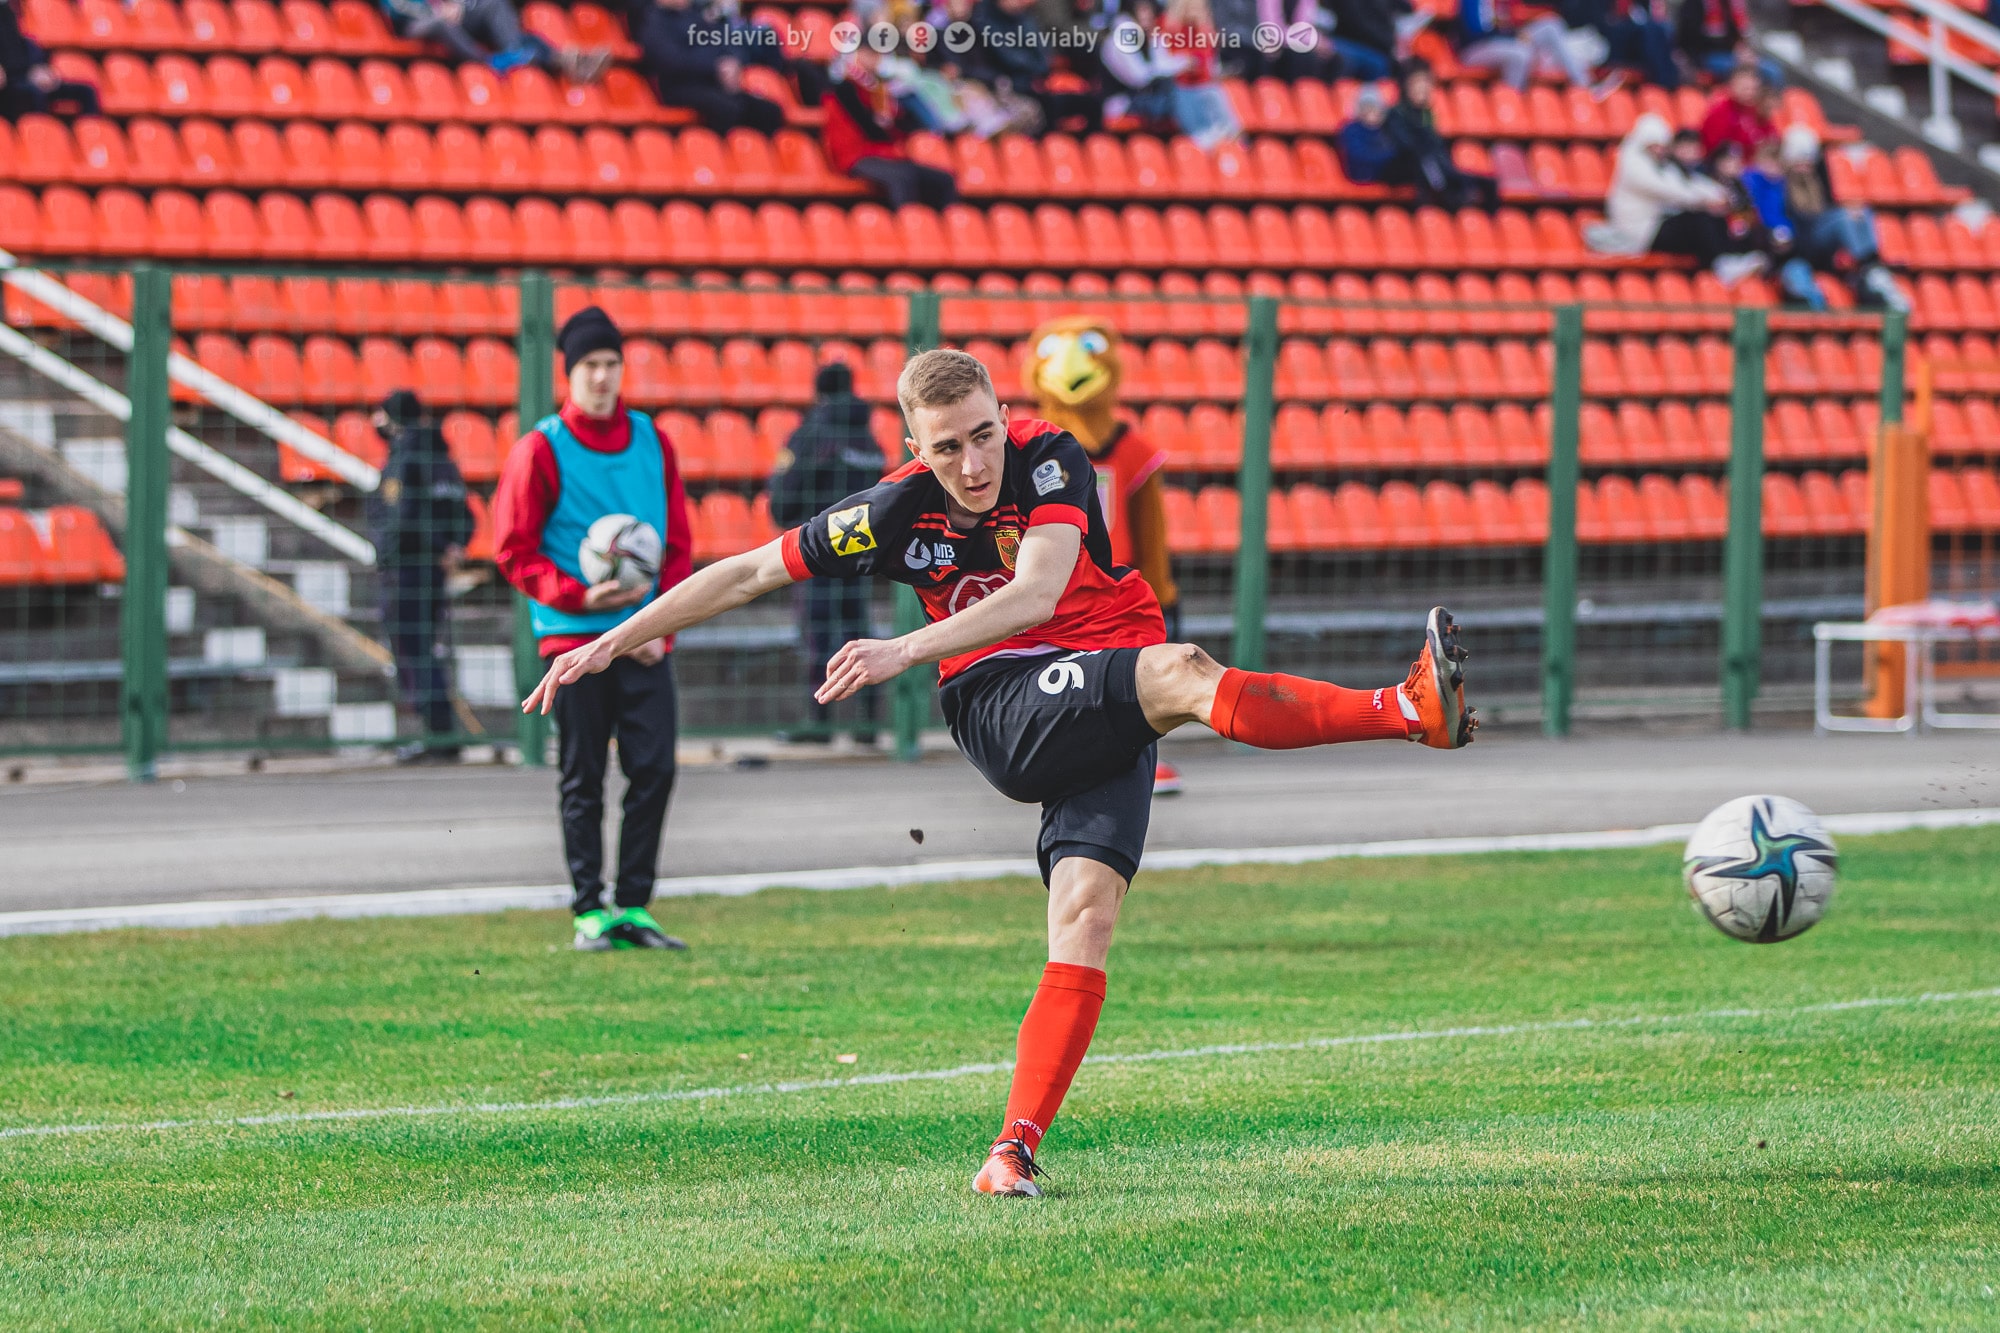 «Славия» и «Сморгонь» сыграли вничью в матче чемпионата Беларуси по футболу